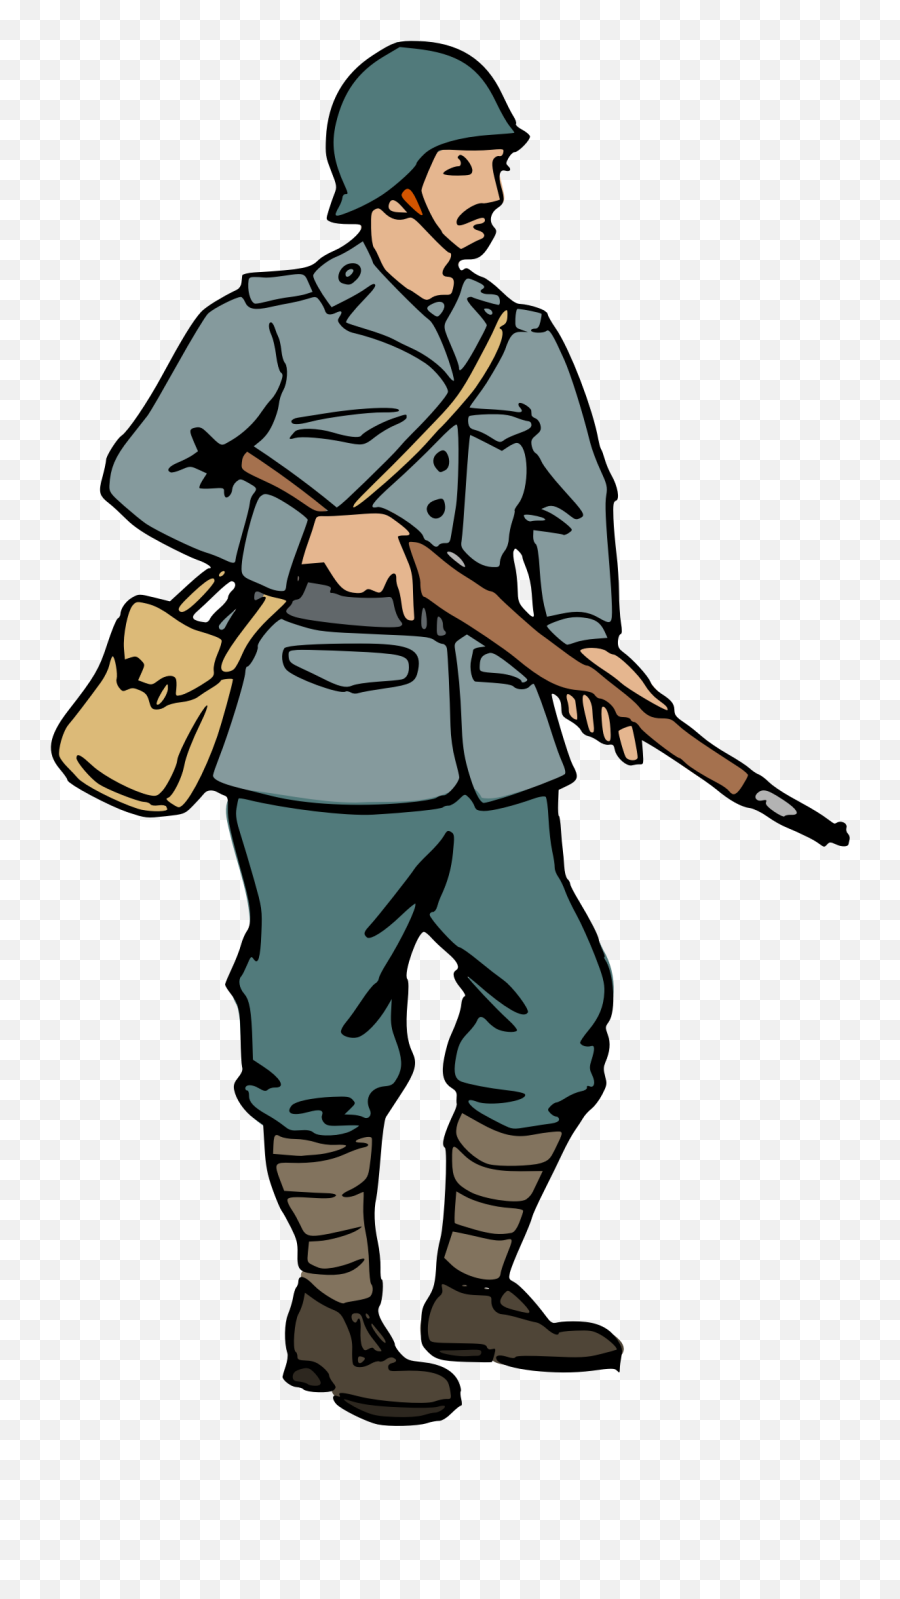 British - World War 2 Soldier Cartoon Clipart Full Size Soldiers In World War 2 Cartoon Emoji,Second World War In Emojis